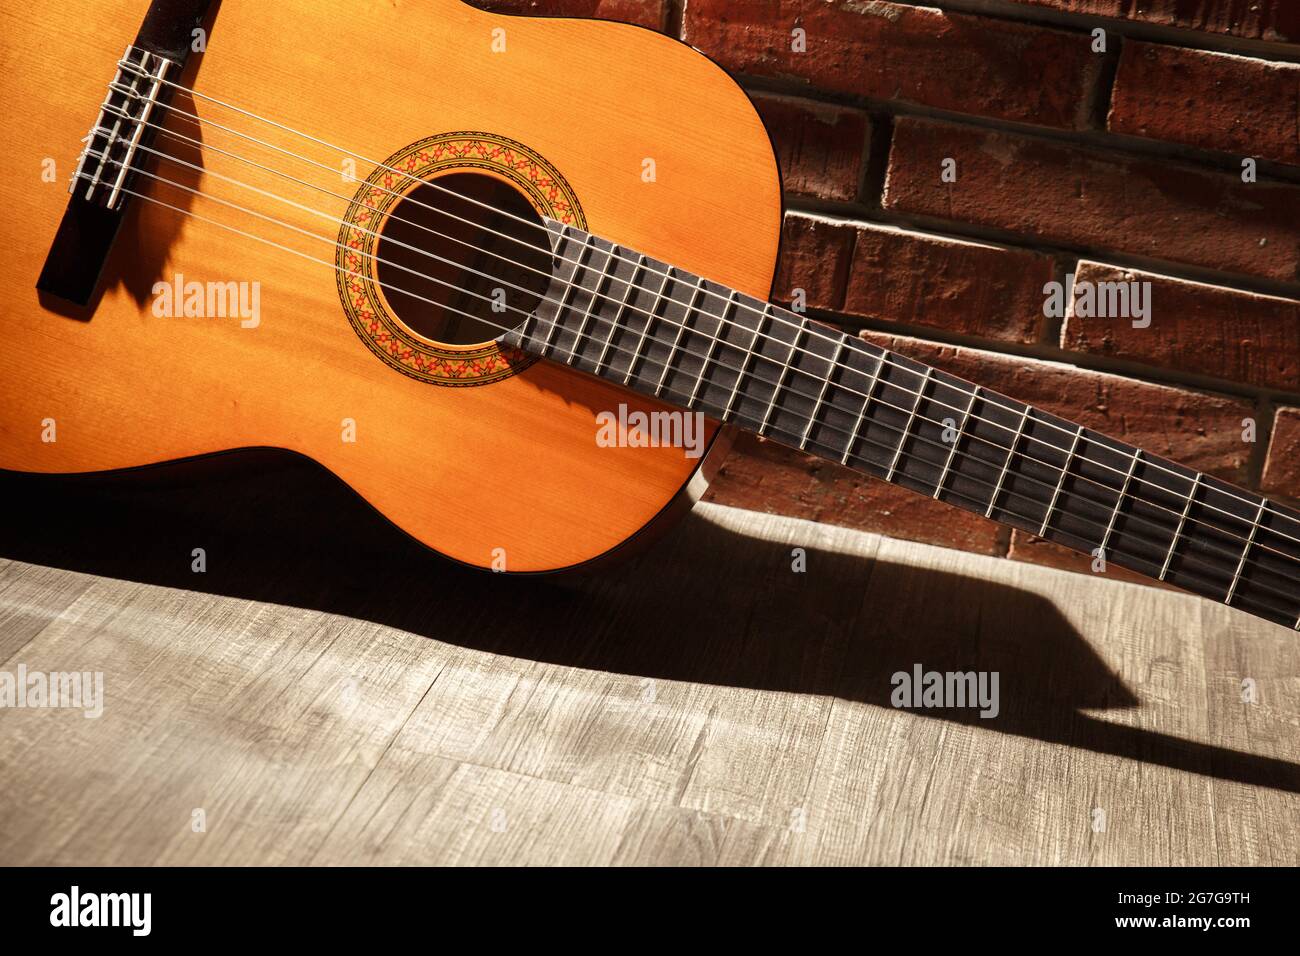 Dettaglio della chitarra classica su sfondo mattone Foto Stock